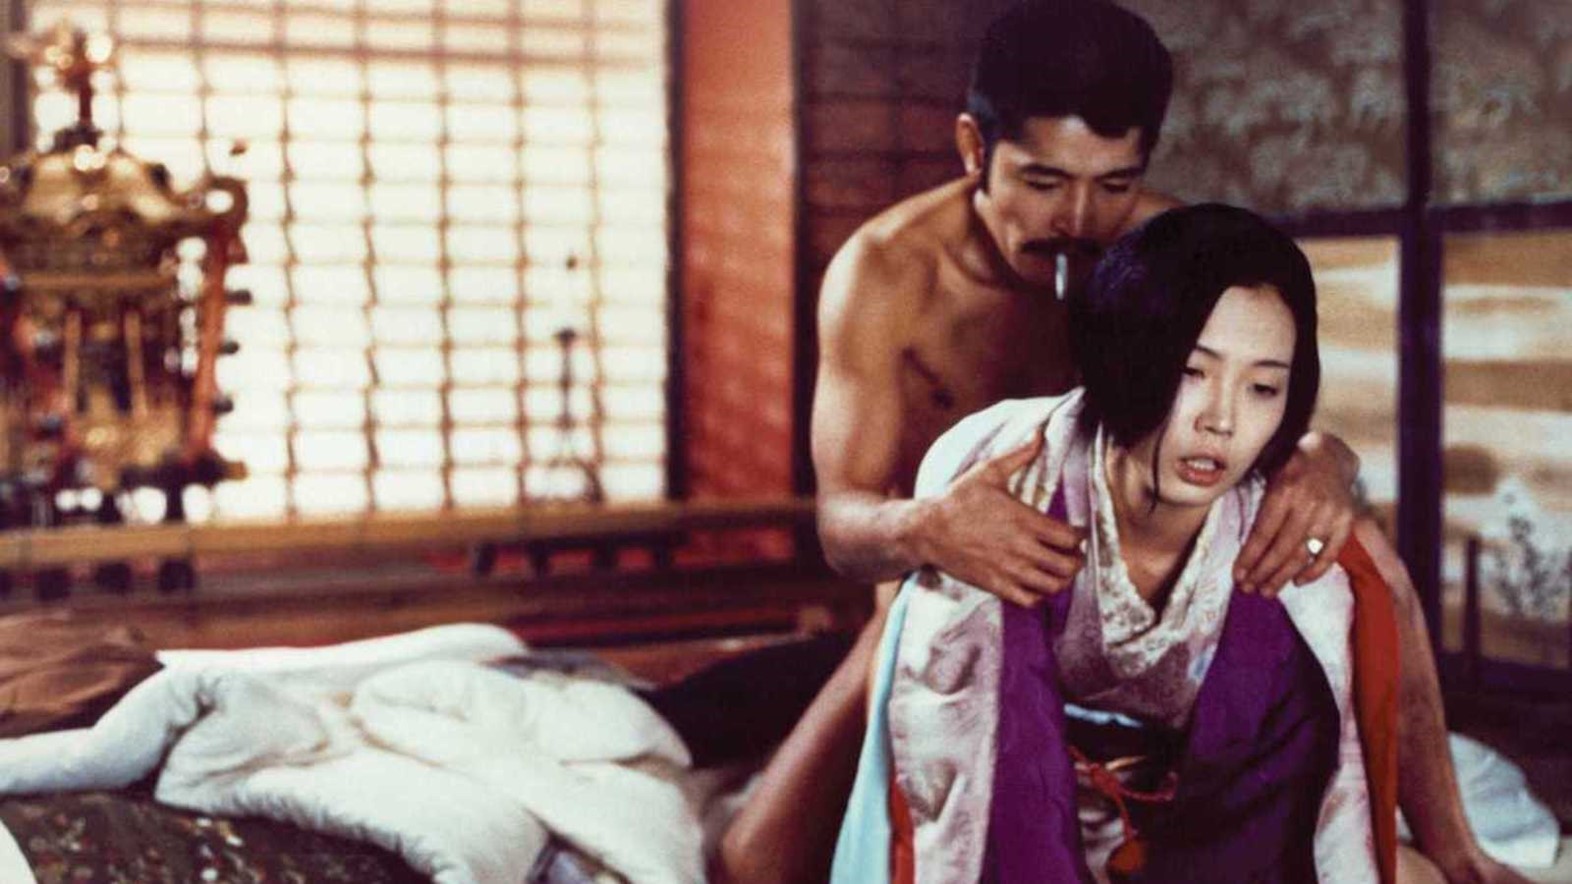 Japanese erotic film